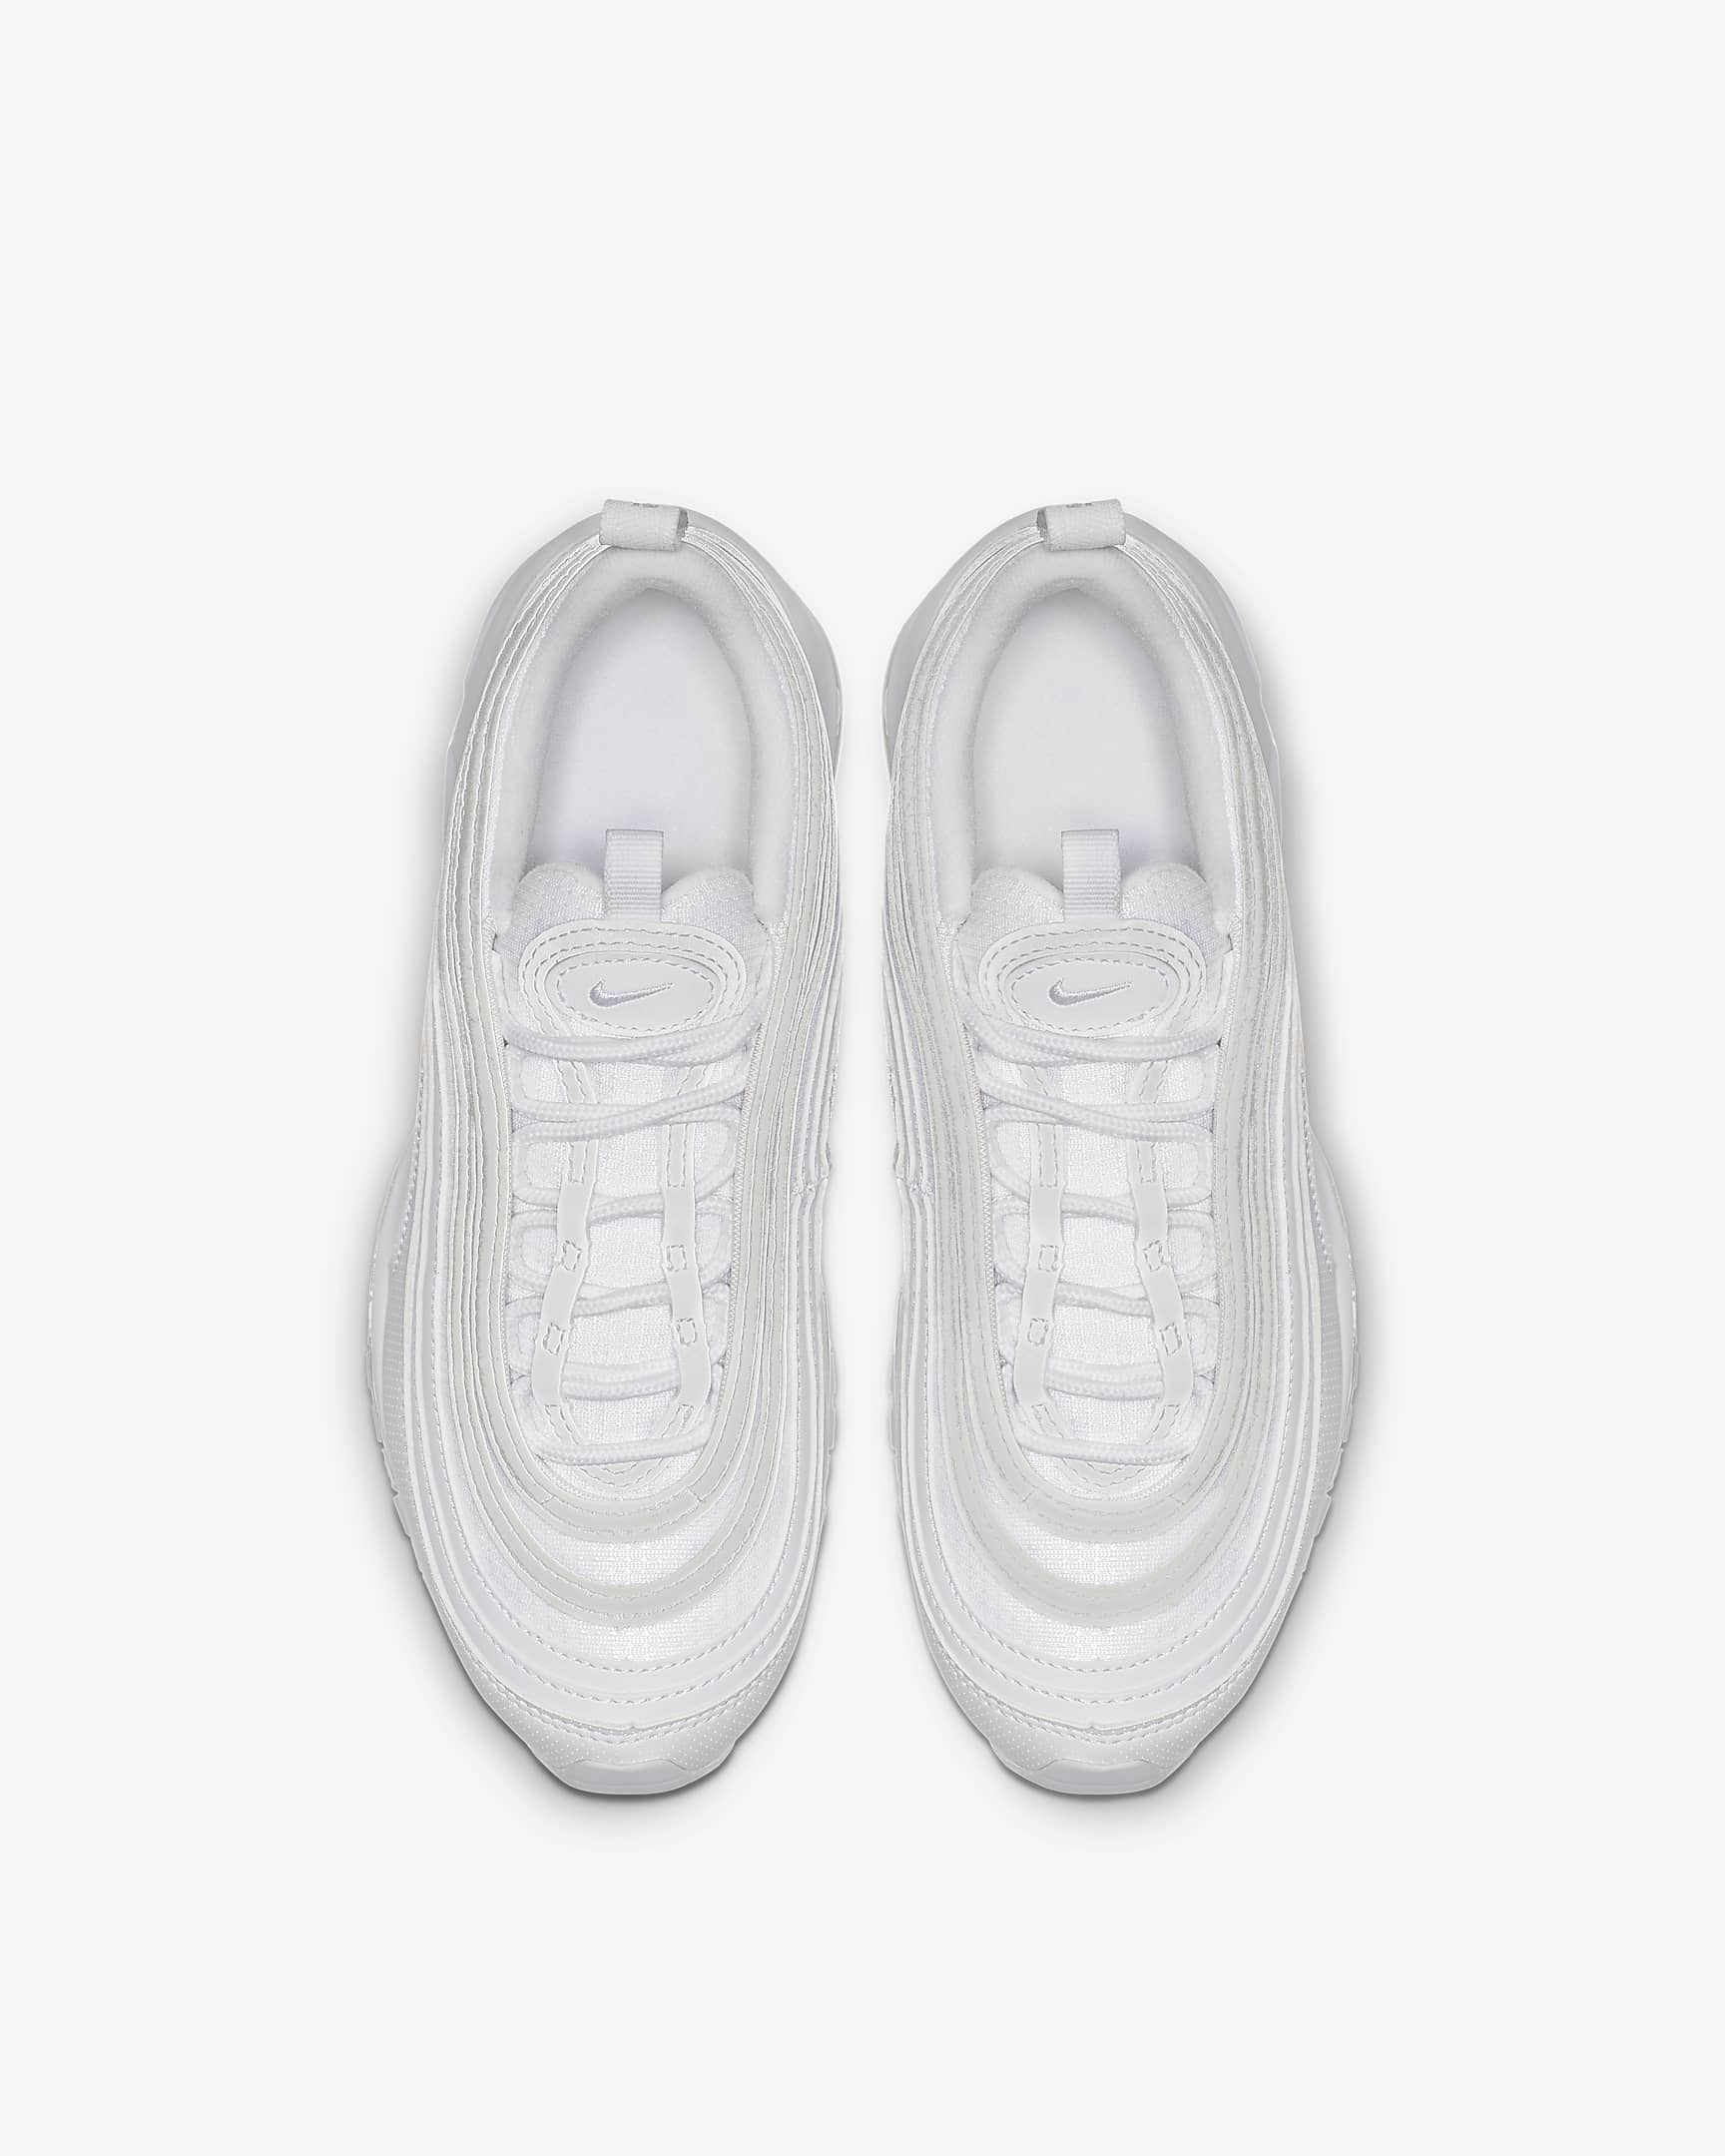 Nike Air Max 97 cipő nagyobb gyerekeknek - Fehér/Metallic Silver/Fehér